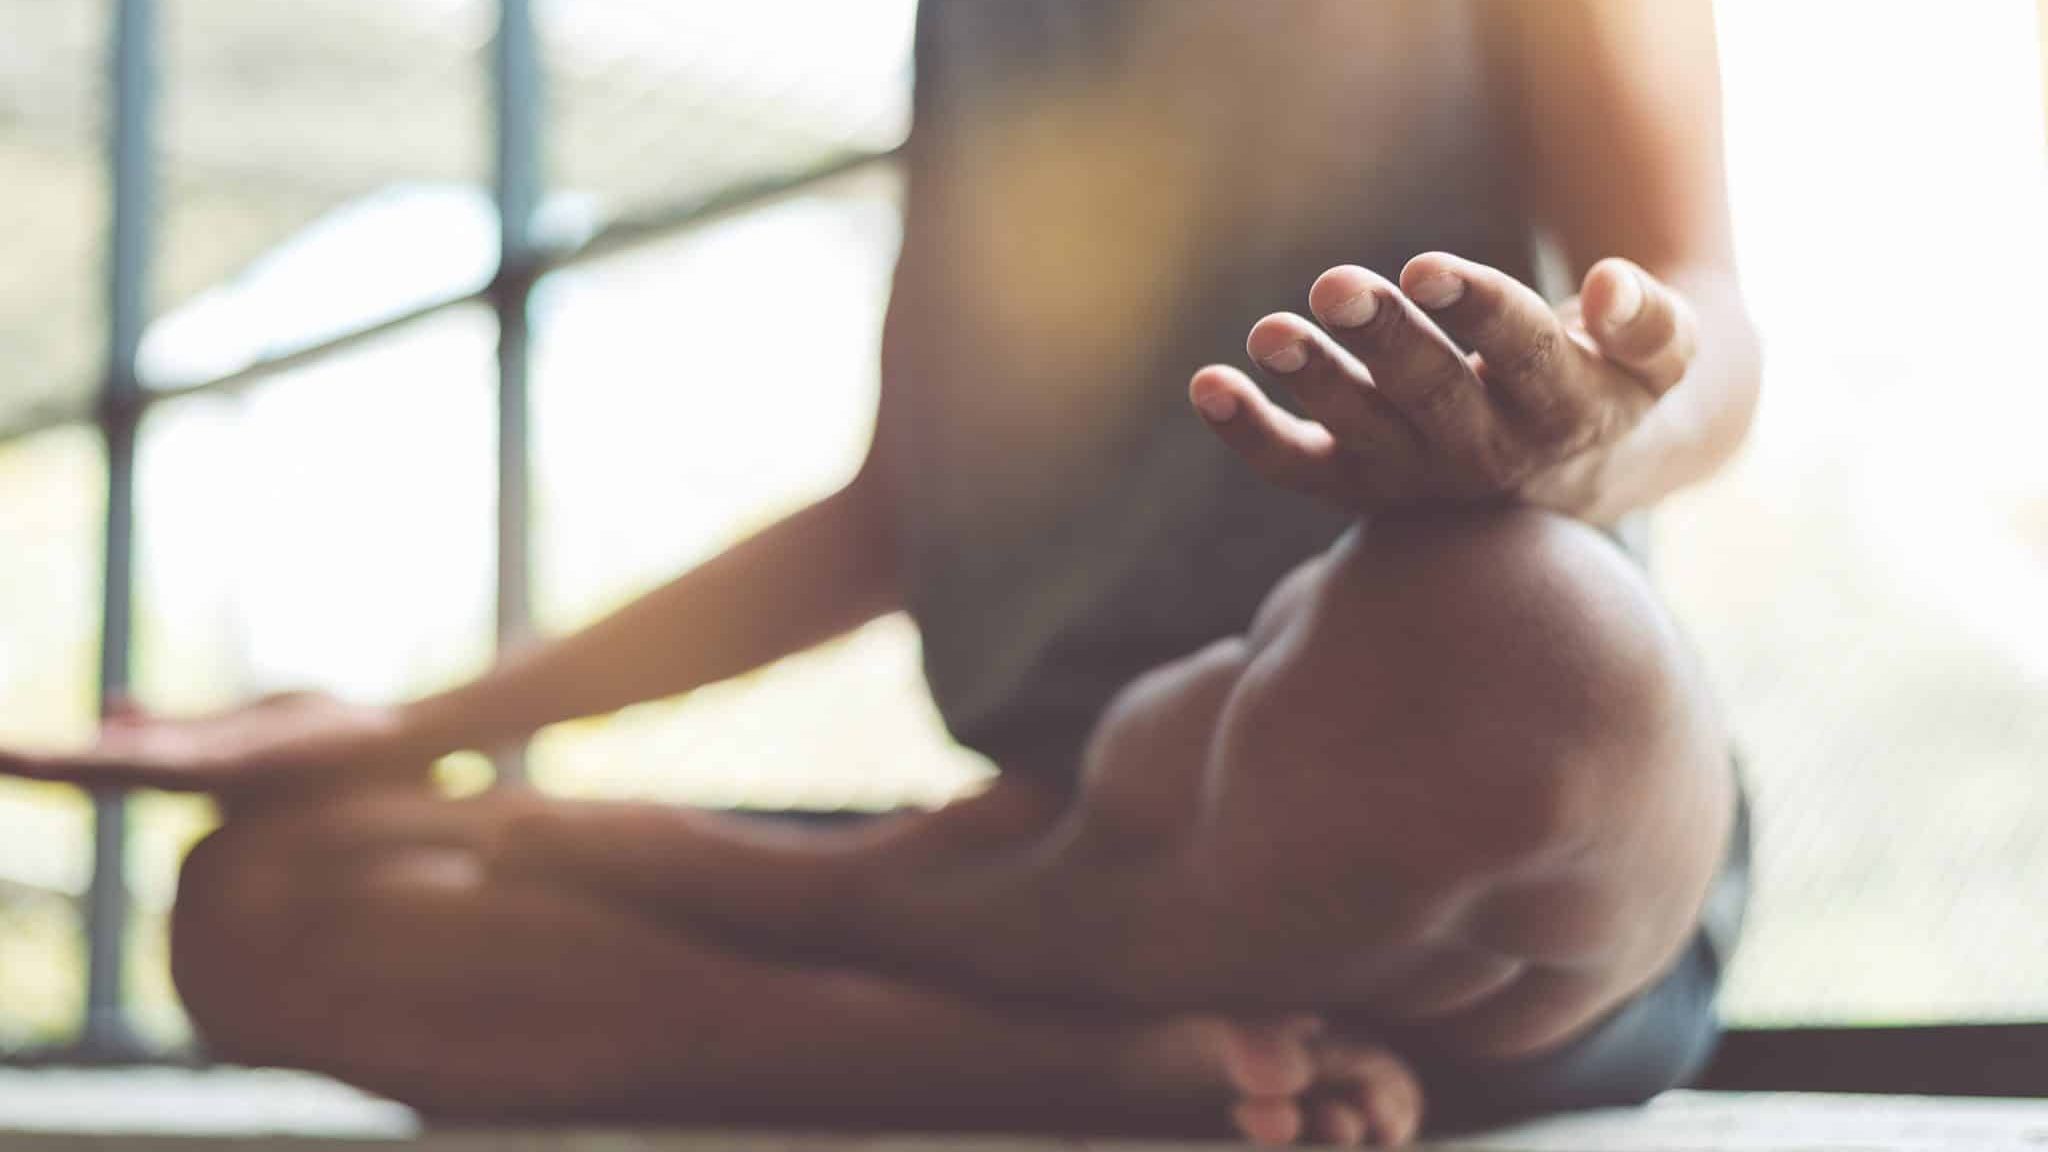 Quels sont les bienfaits de la méditation ?